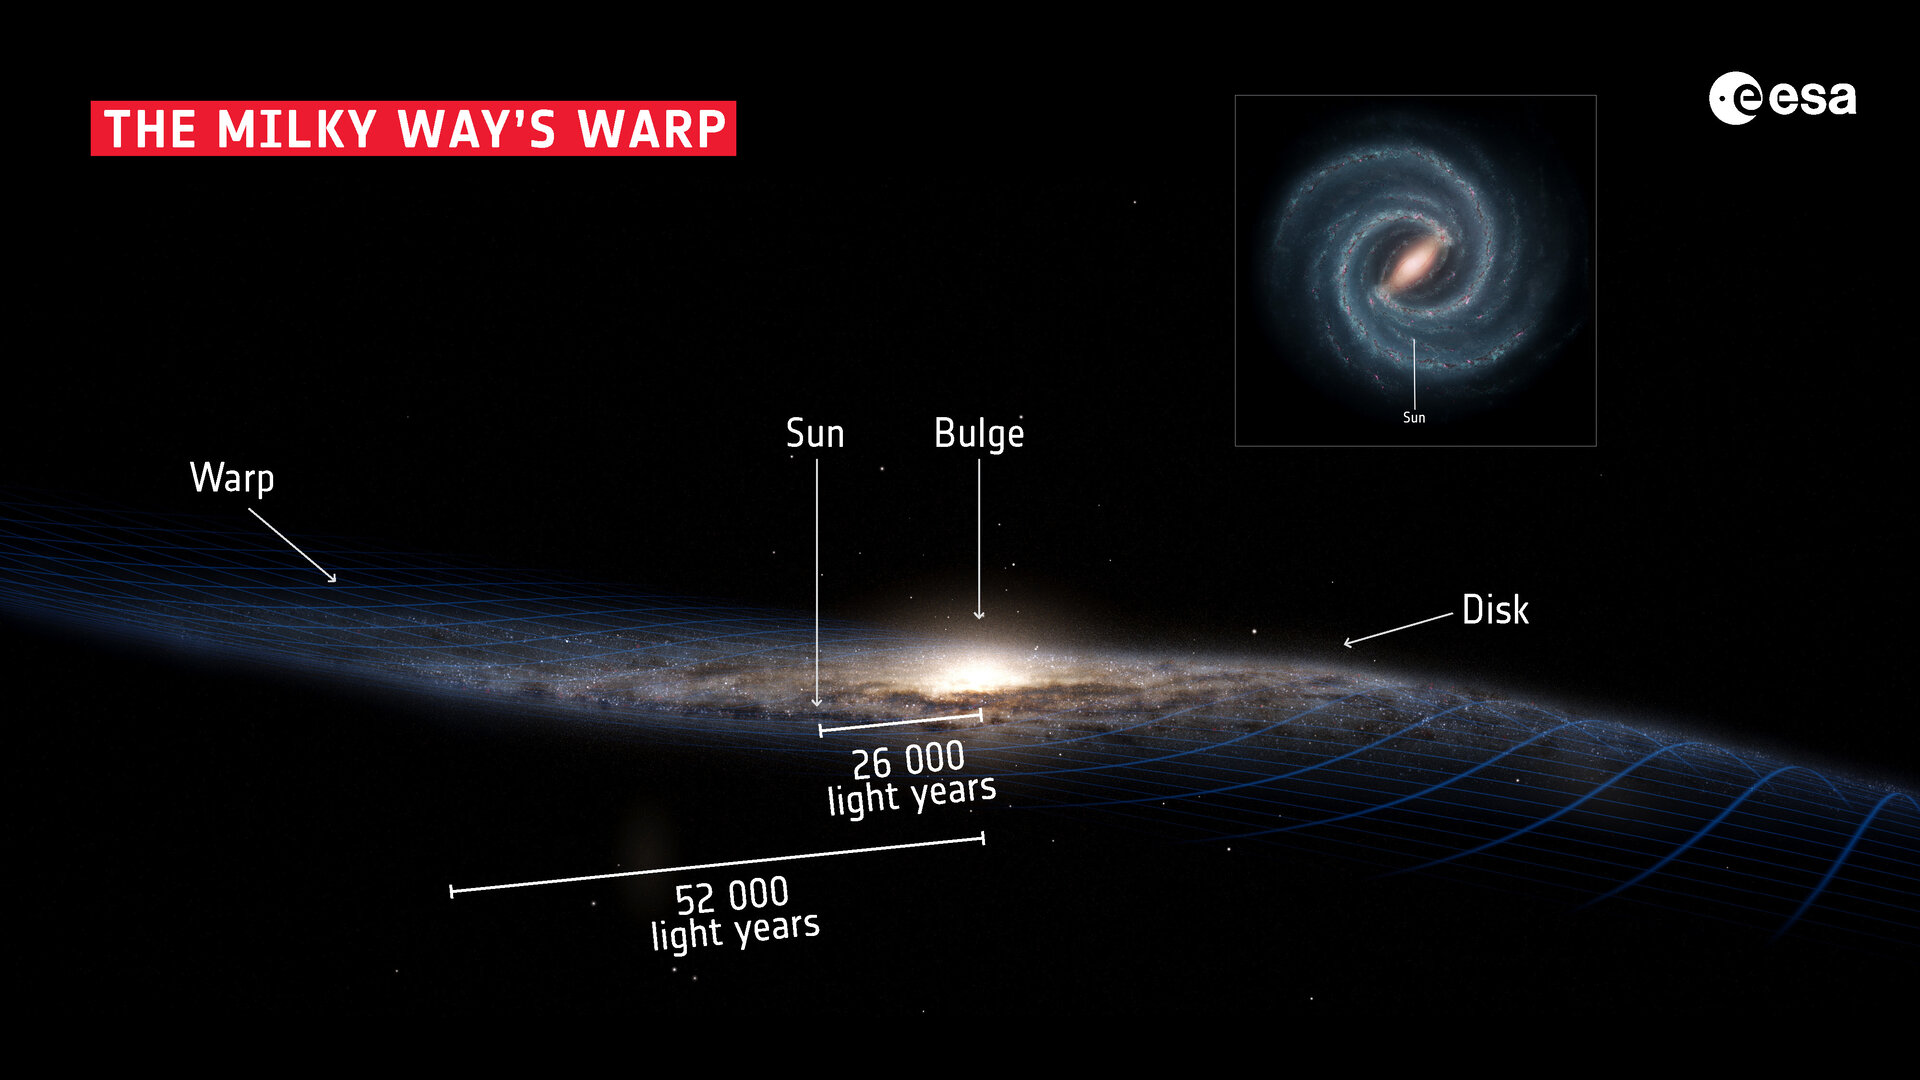 Солнечный сколько звезд. Структура Галактики Млечный путь. Толщина Галактики Млечный путь. Состав Млечного пути нашей Галактики. Состав и строение Галактики Млечный путь.